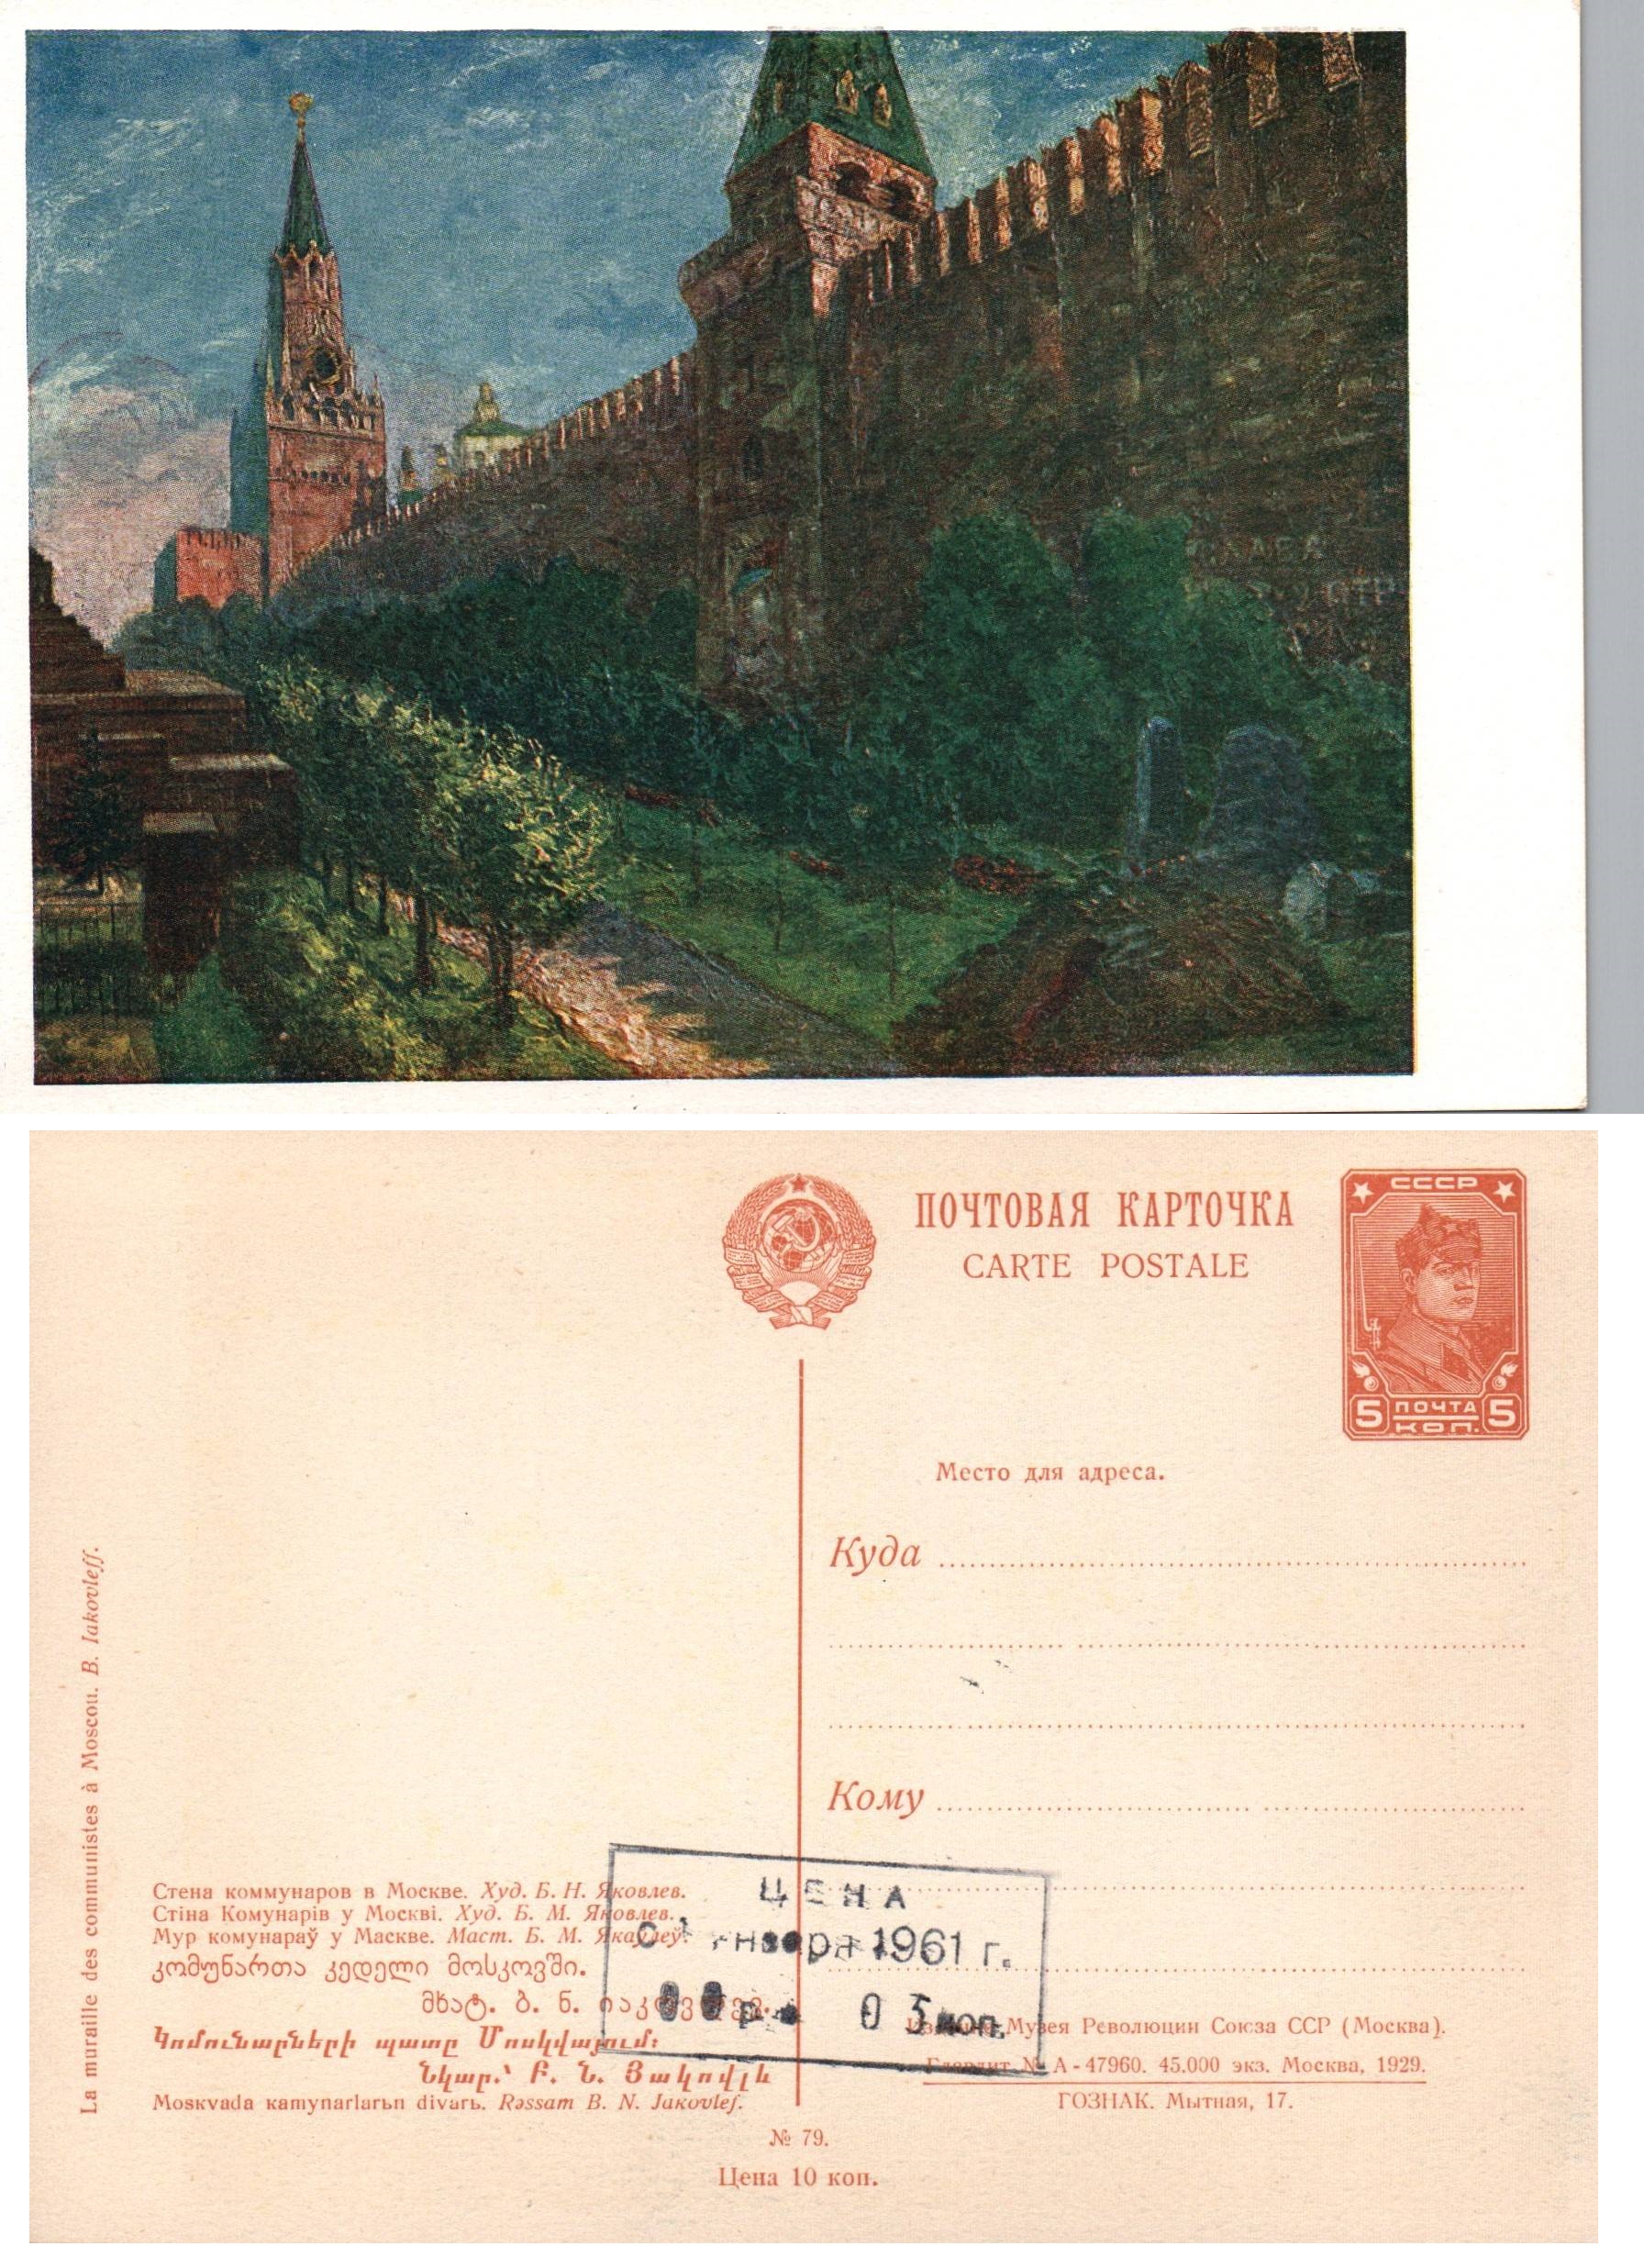 Postal Stationery - Soviet Union Scott 2679 Michel P94.79 